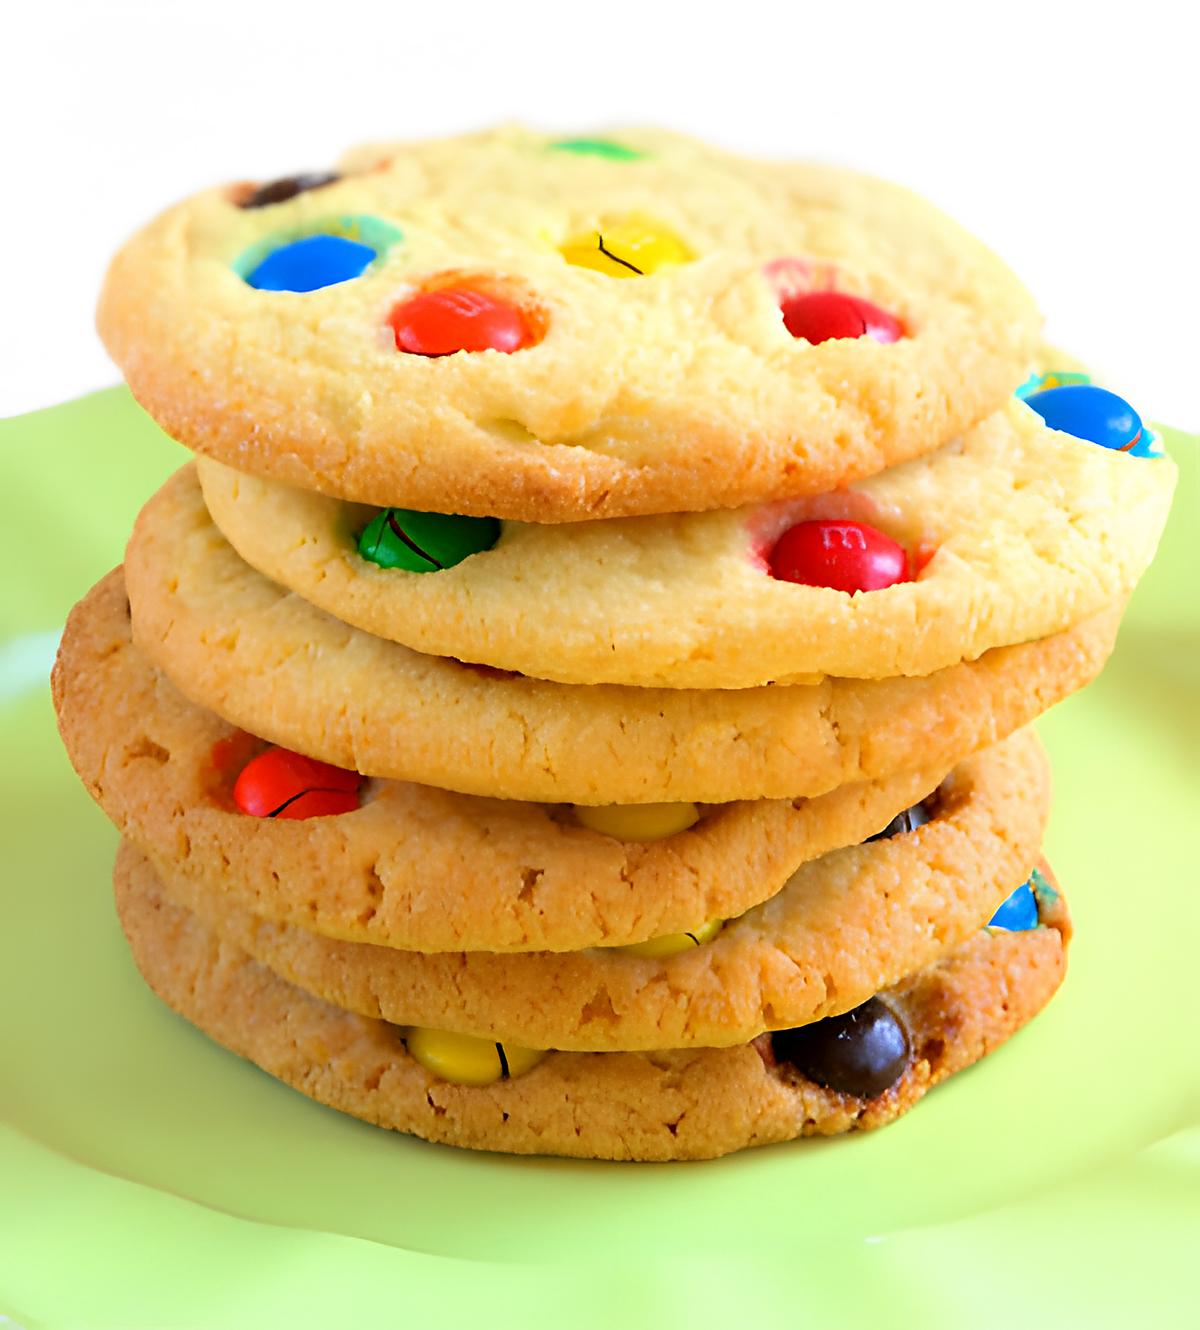 recette cookies au m&m's :